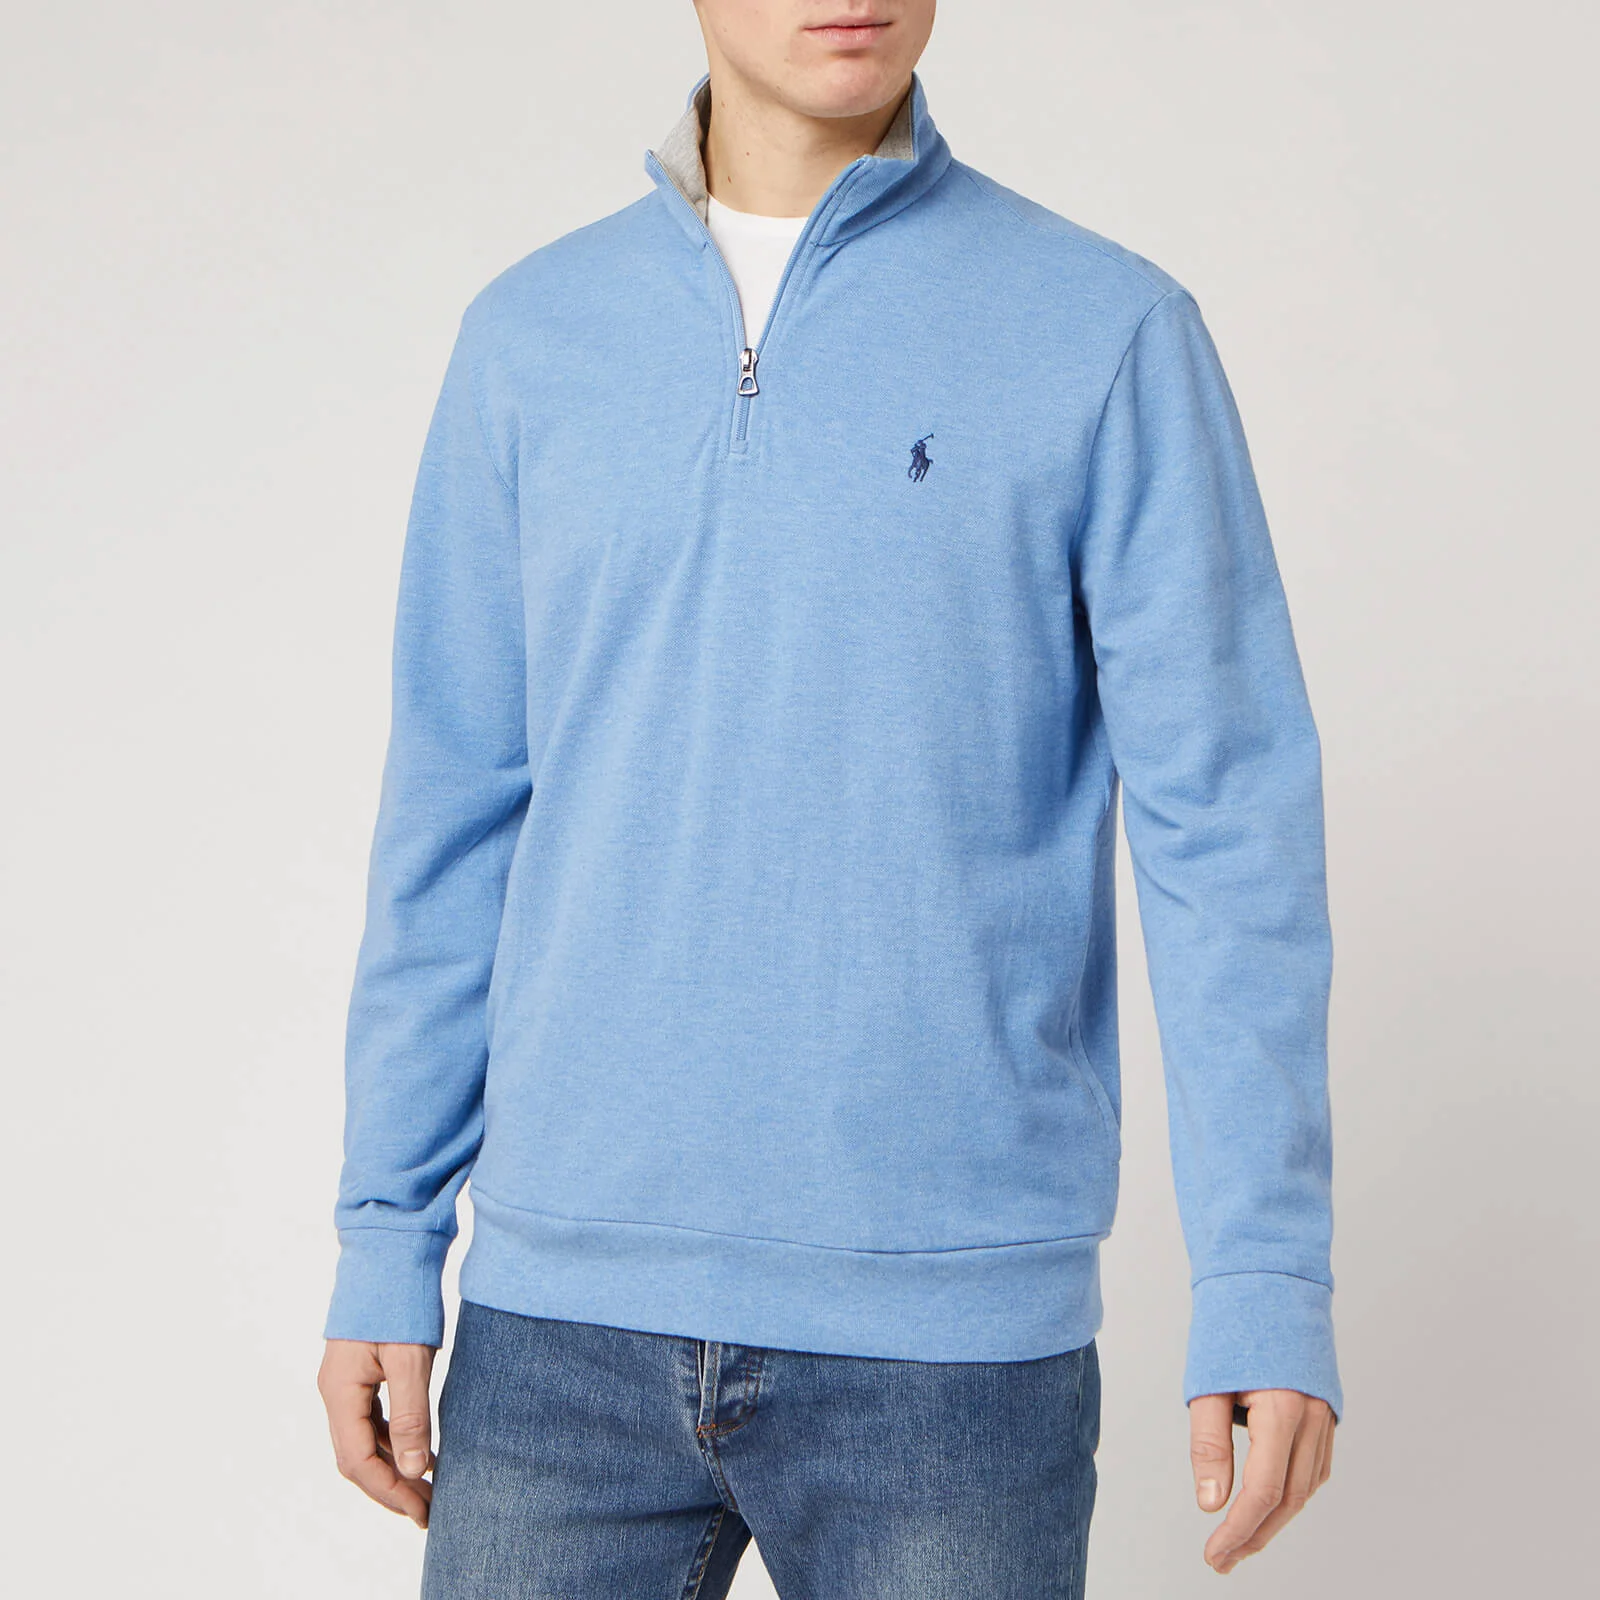 Polo Ralph Lauren Men's Half Zip Sweatshirt - Soft Royal Heather Image 1